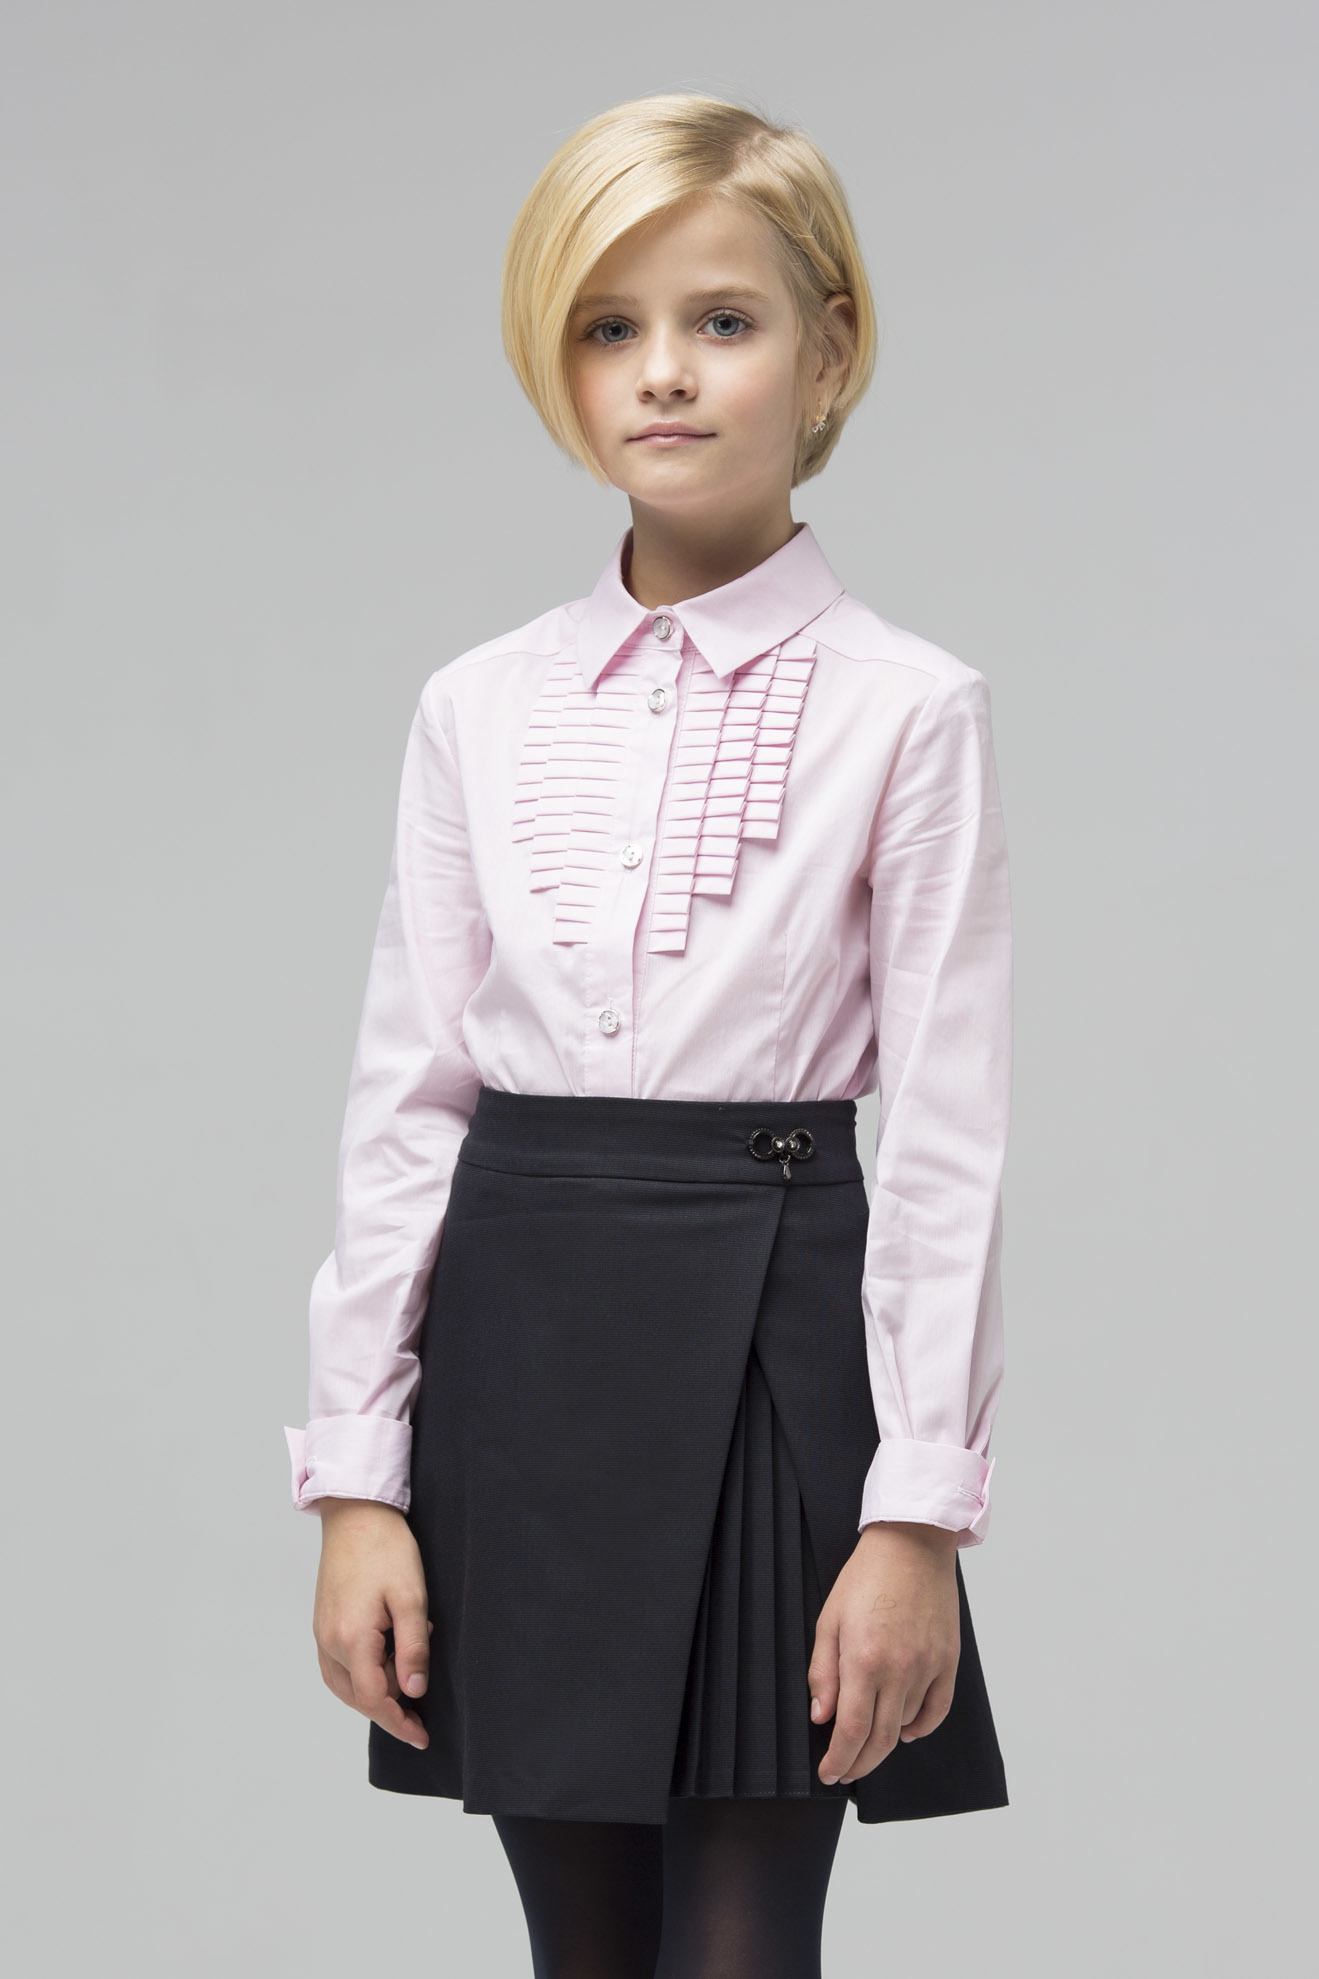 Современные модели блузок для девушек